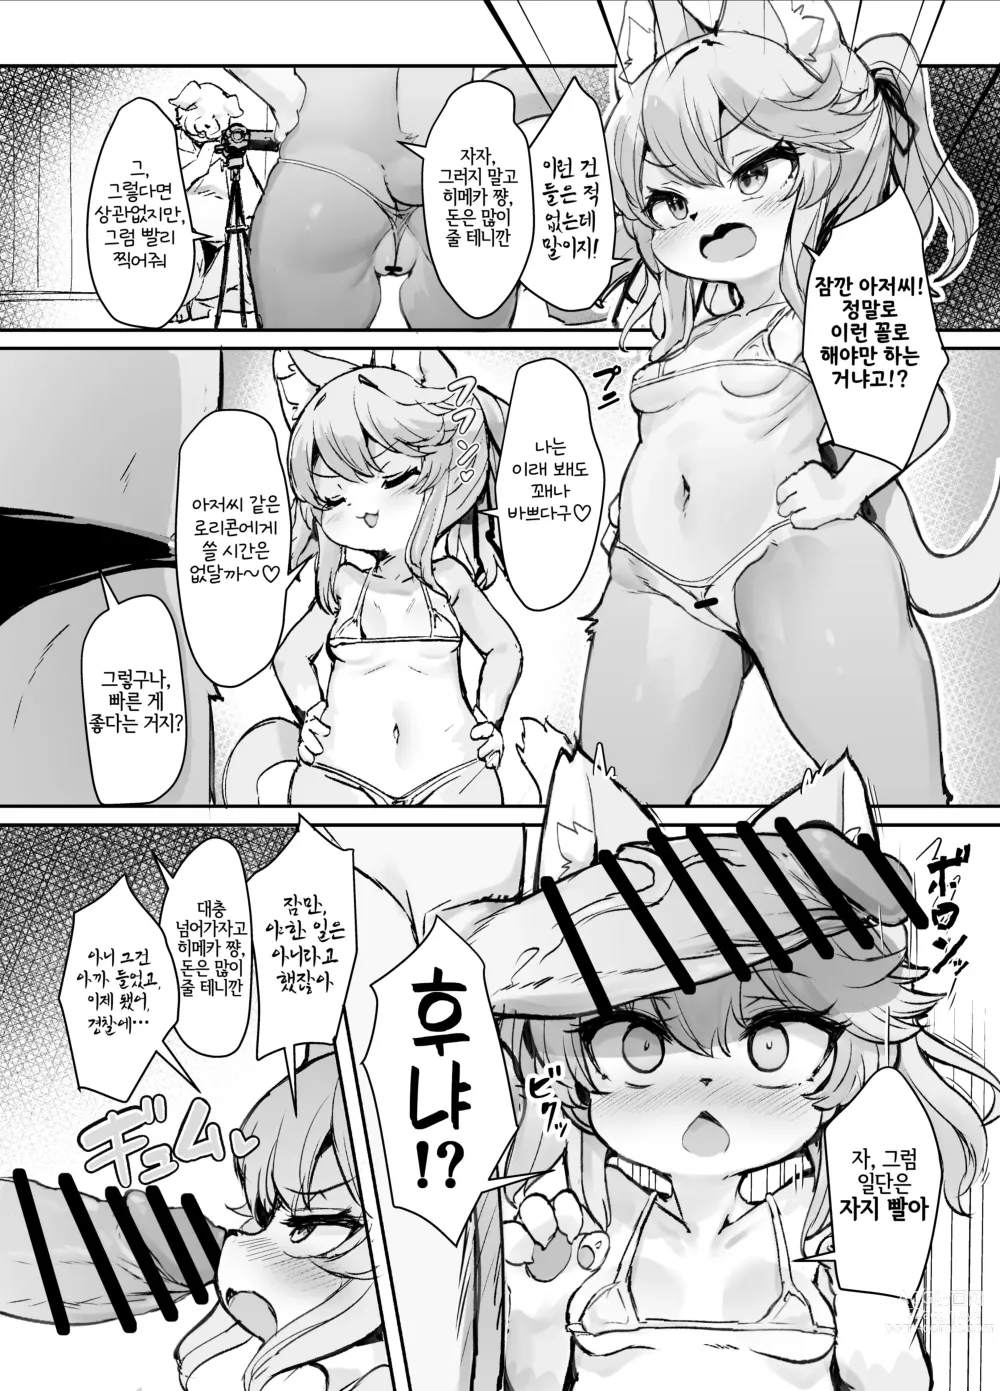 Page 3 of doujinshi 메스가키 케모로리 히메카 쨩이 로리콘 아저씨 따위에게 질 리가 없어!!